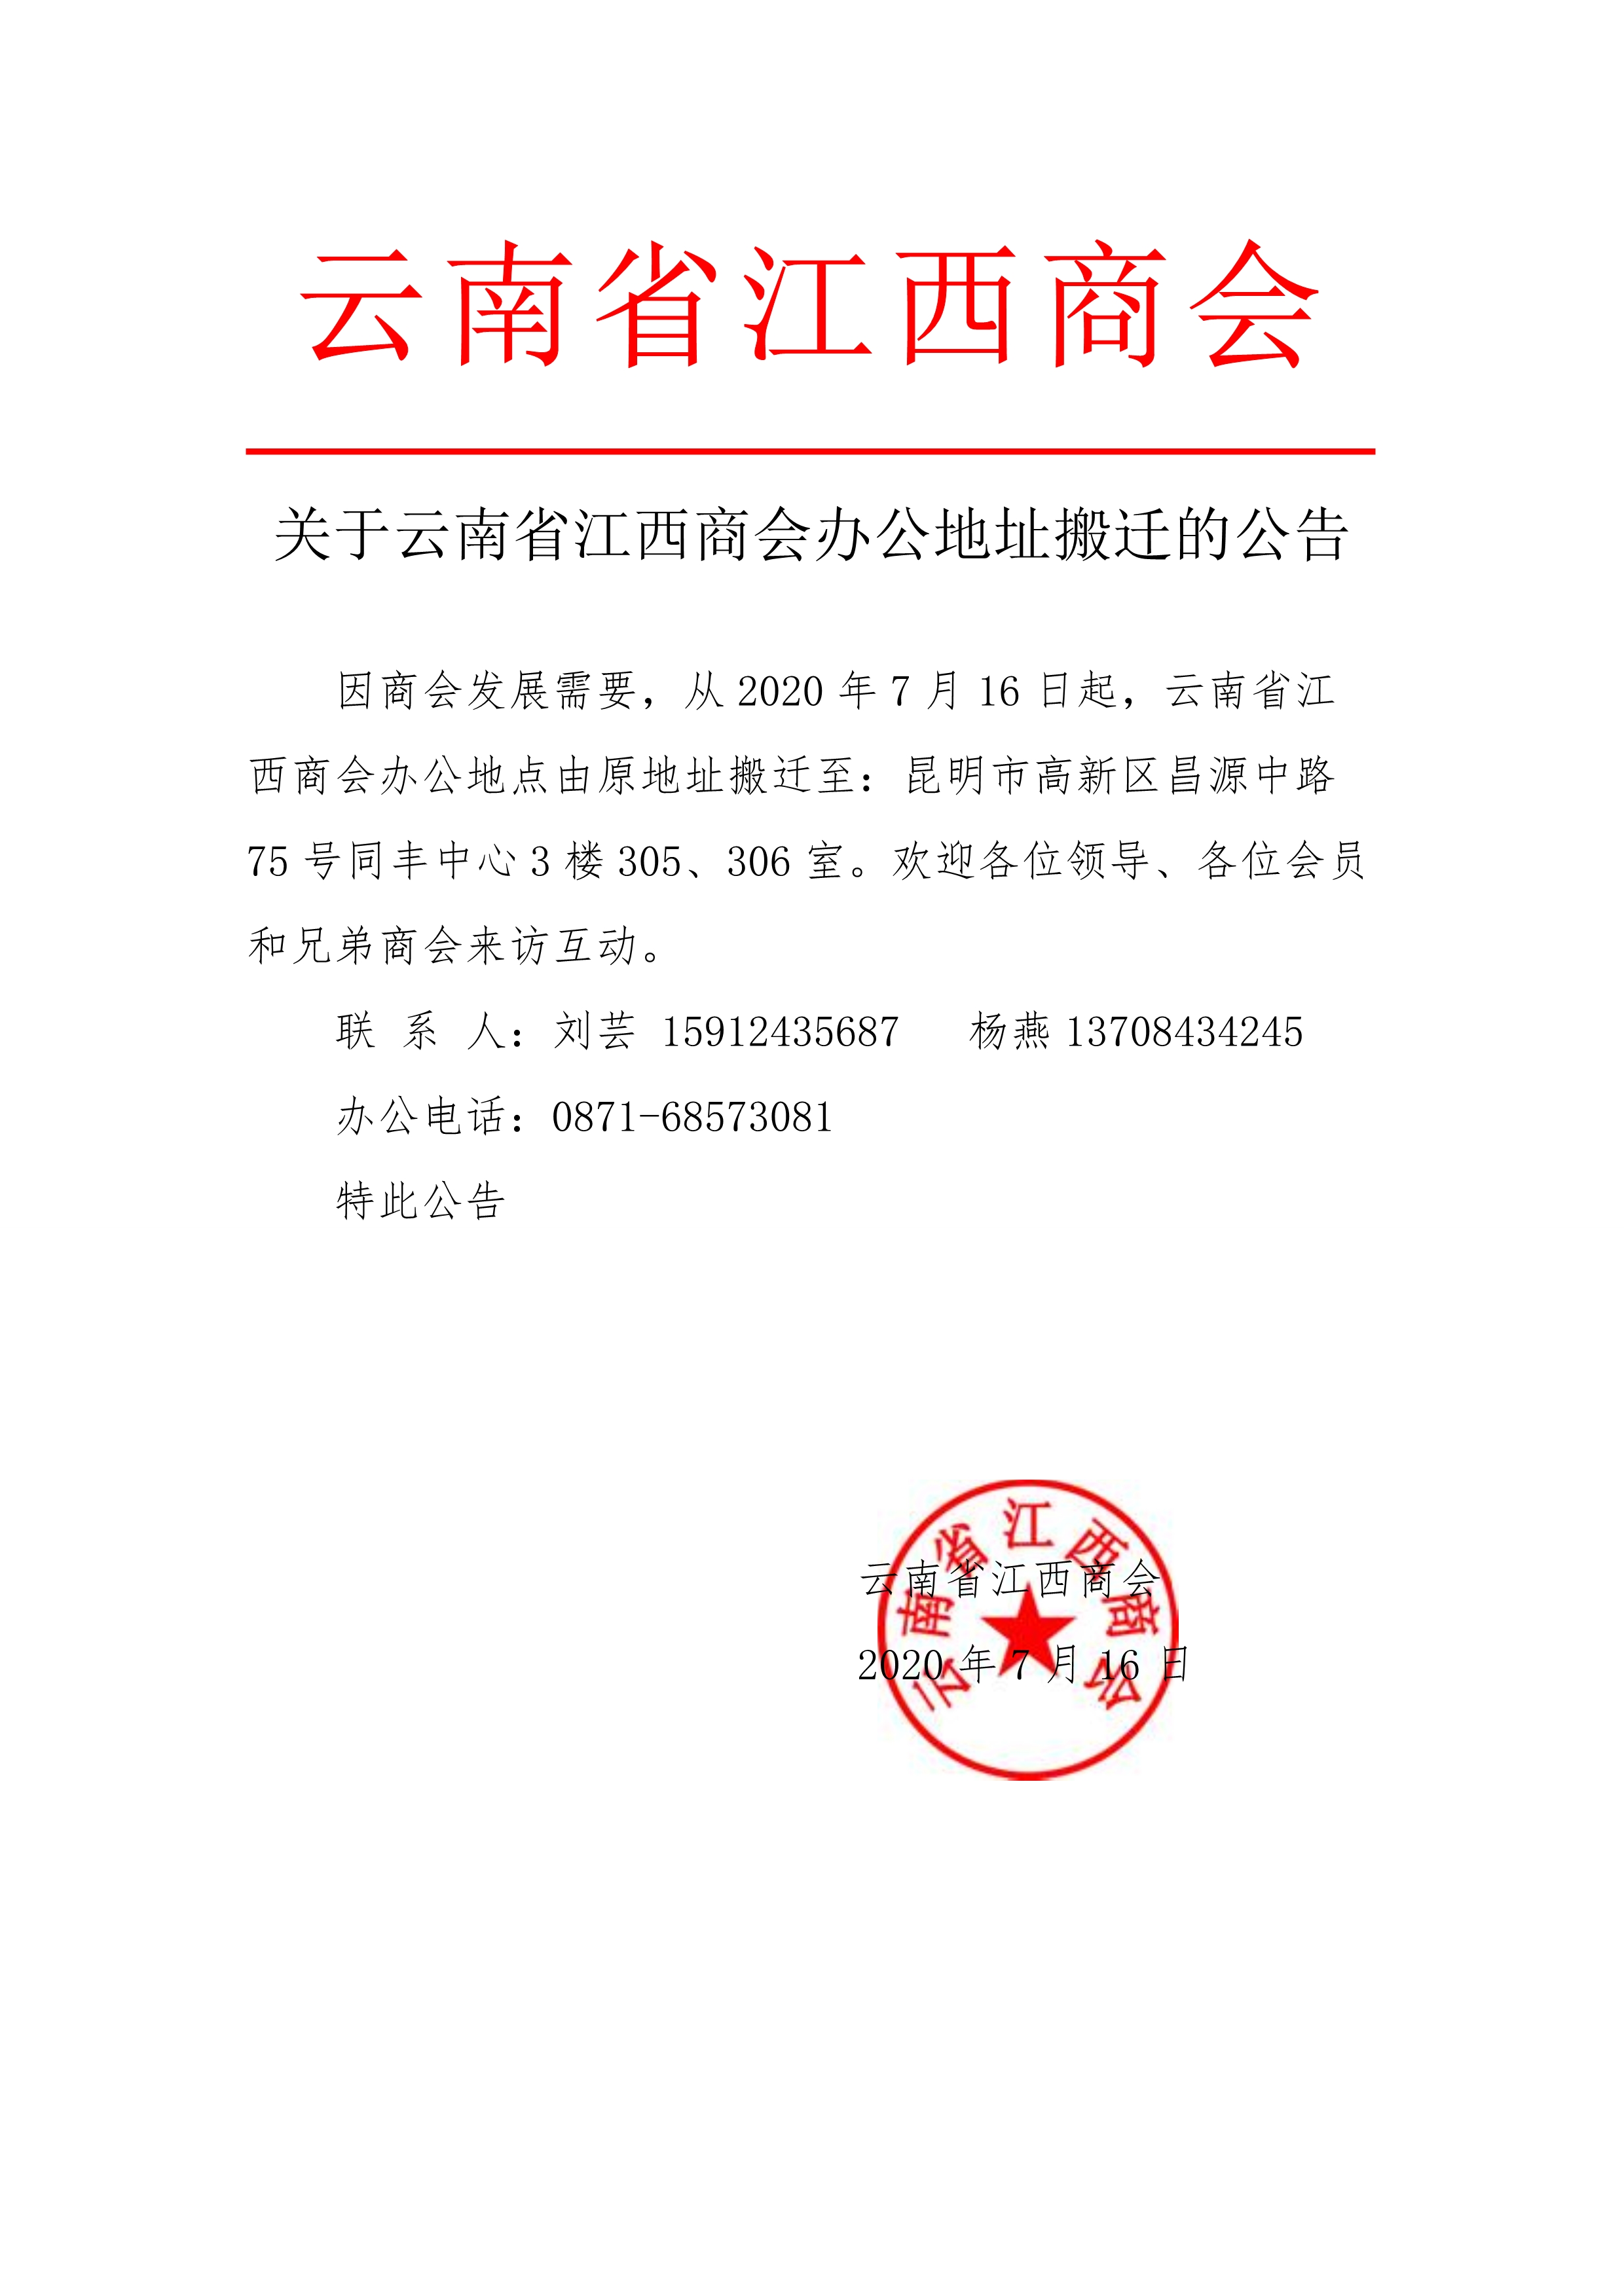 关于云南省江西商会办公地址搬迁的公告_1.jpg